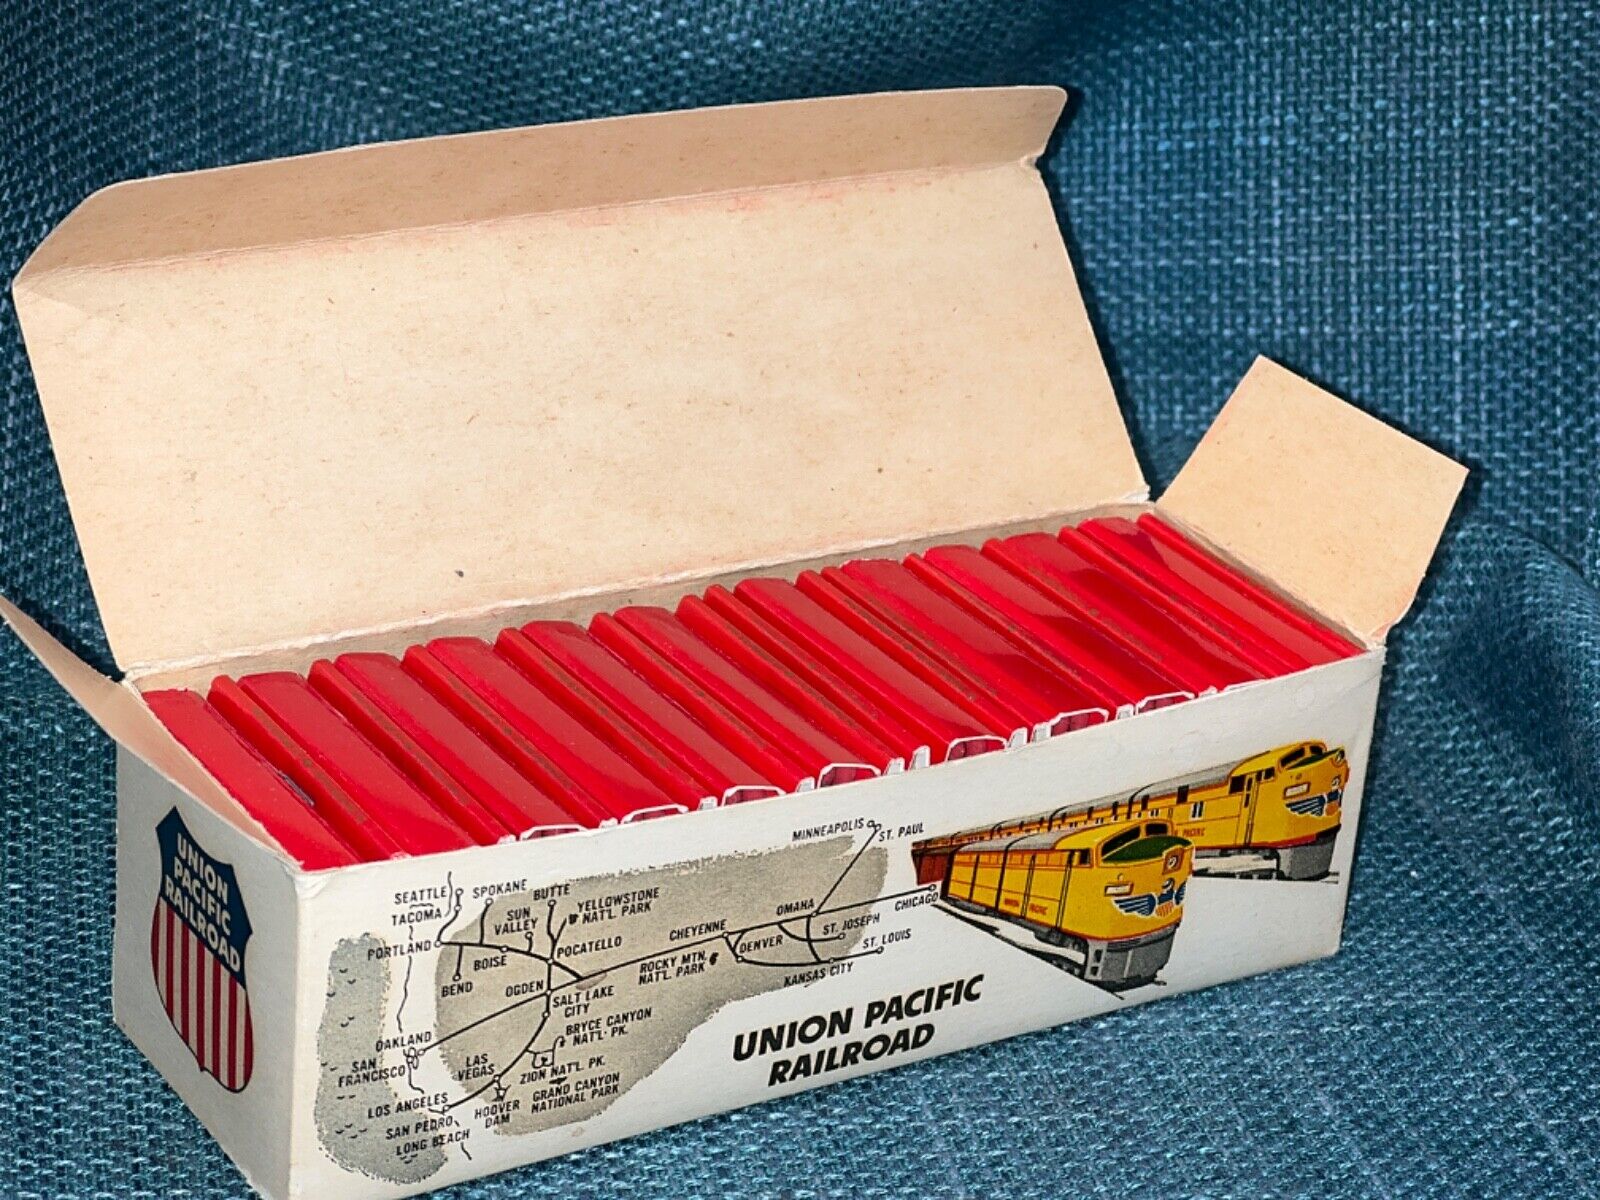 Union Pacific Railroad Box of Matches